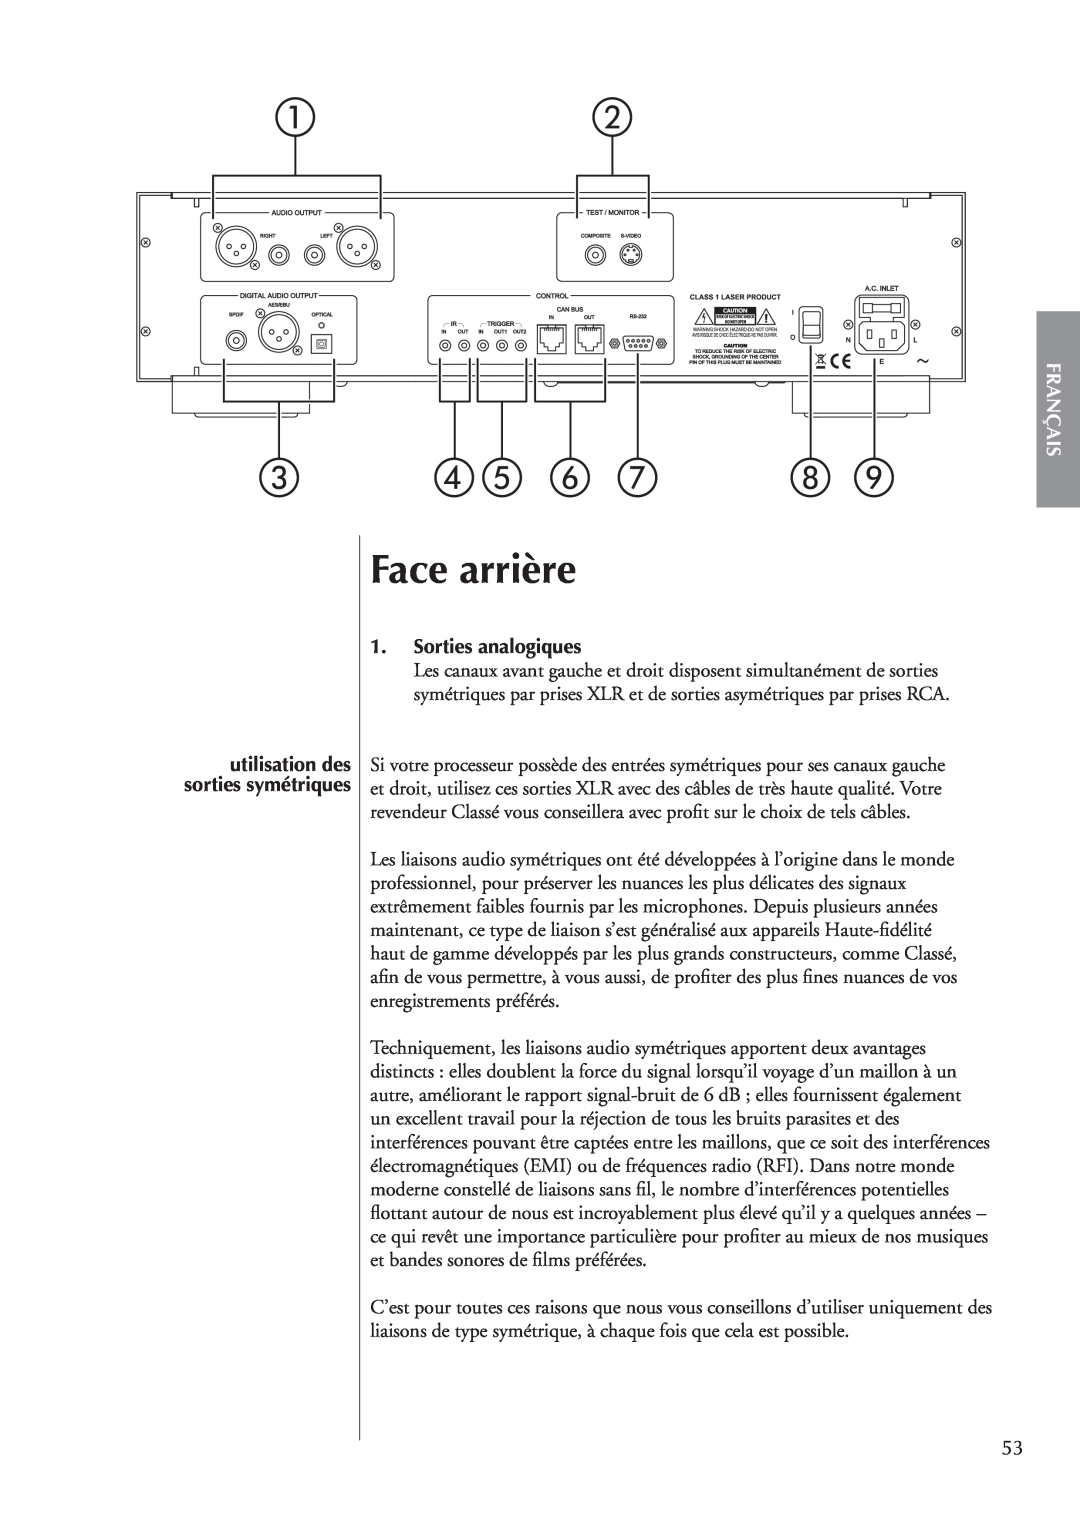 Classe Audio CDP-202 owner manual Face arrière, Sorties analogiques, utilisation des, Français, sorties symétriques 